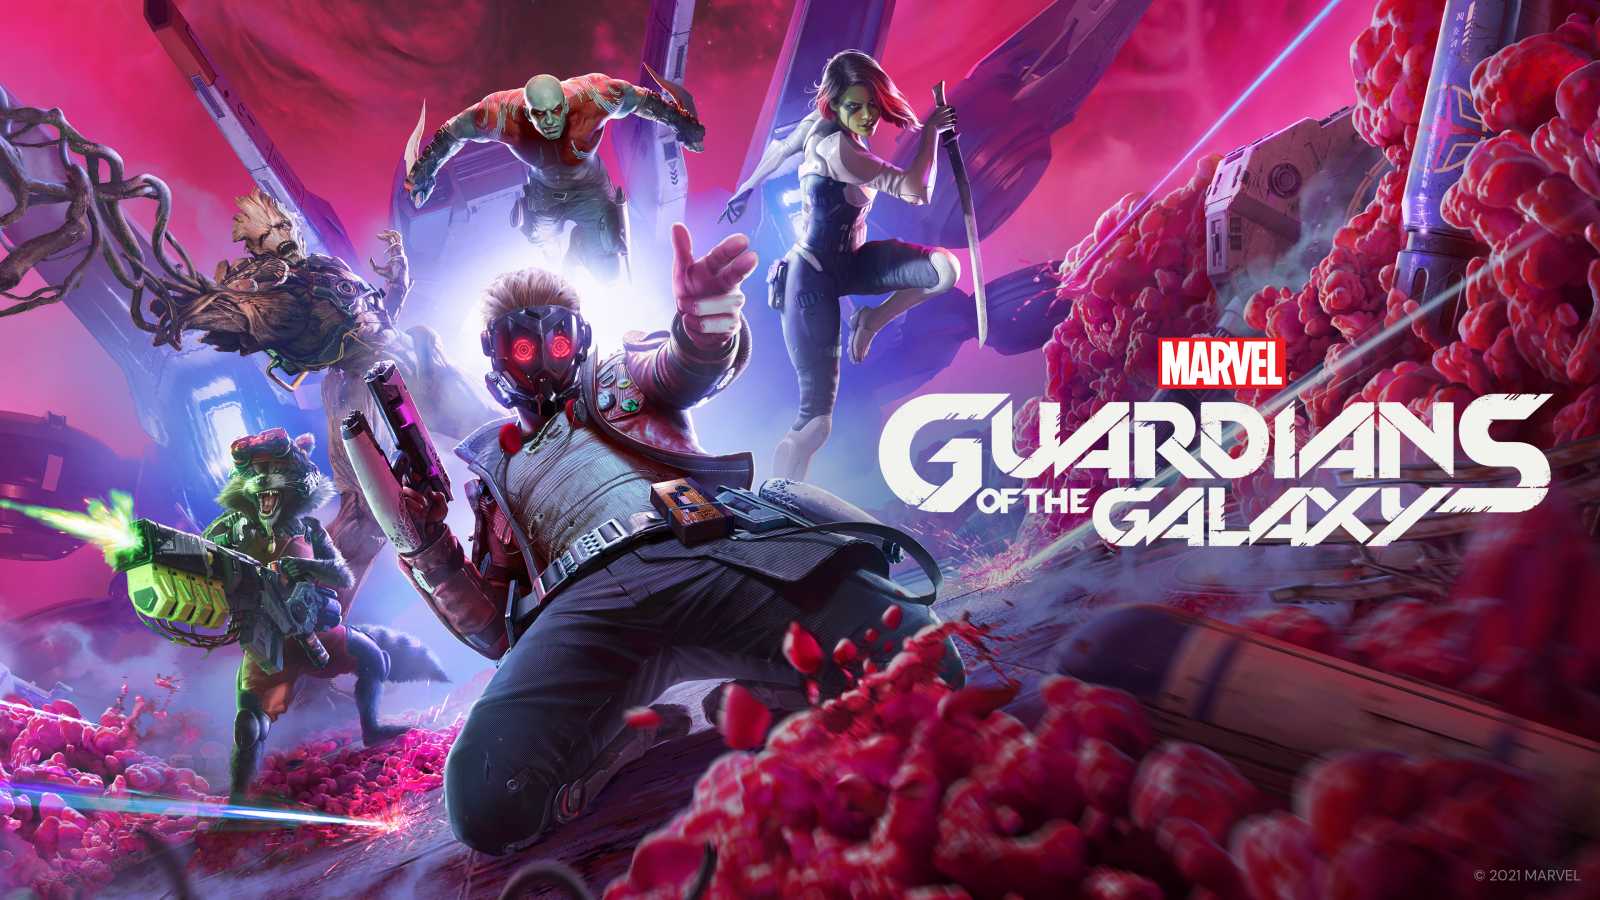 Guardians of the Galaxy v novém traileru opět srší humorem